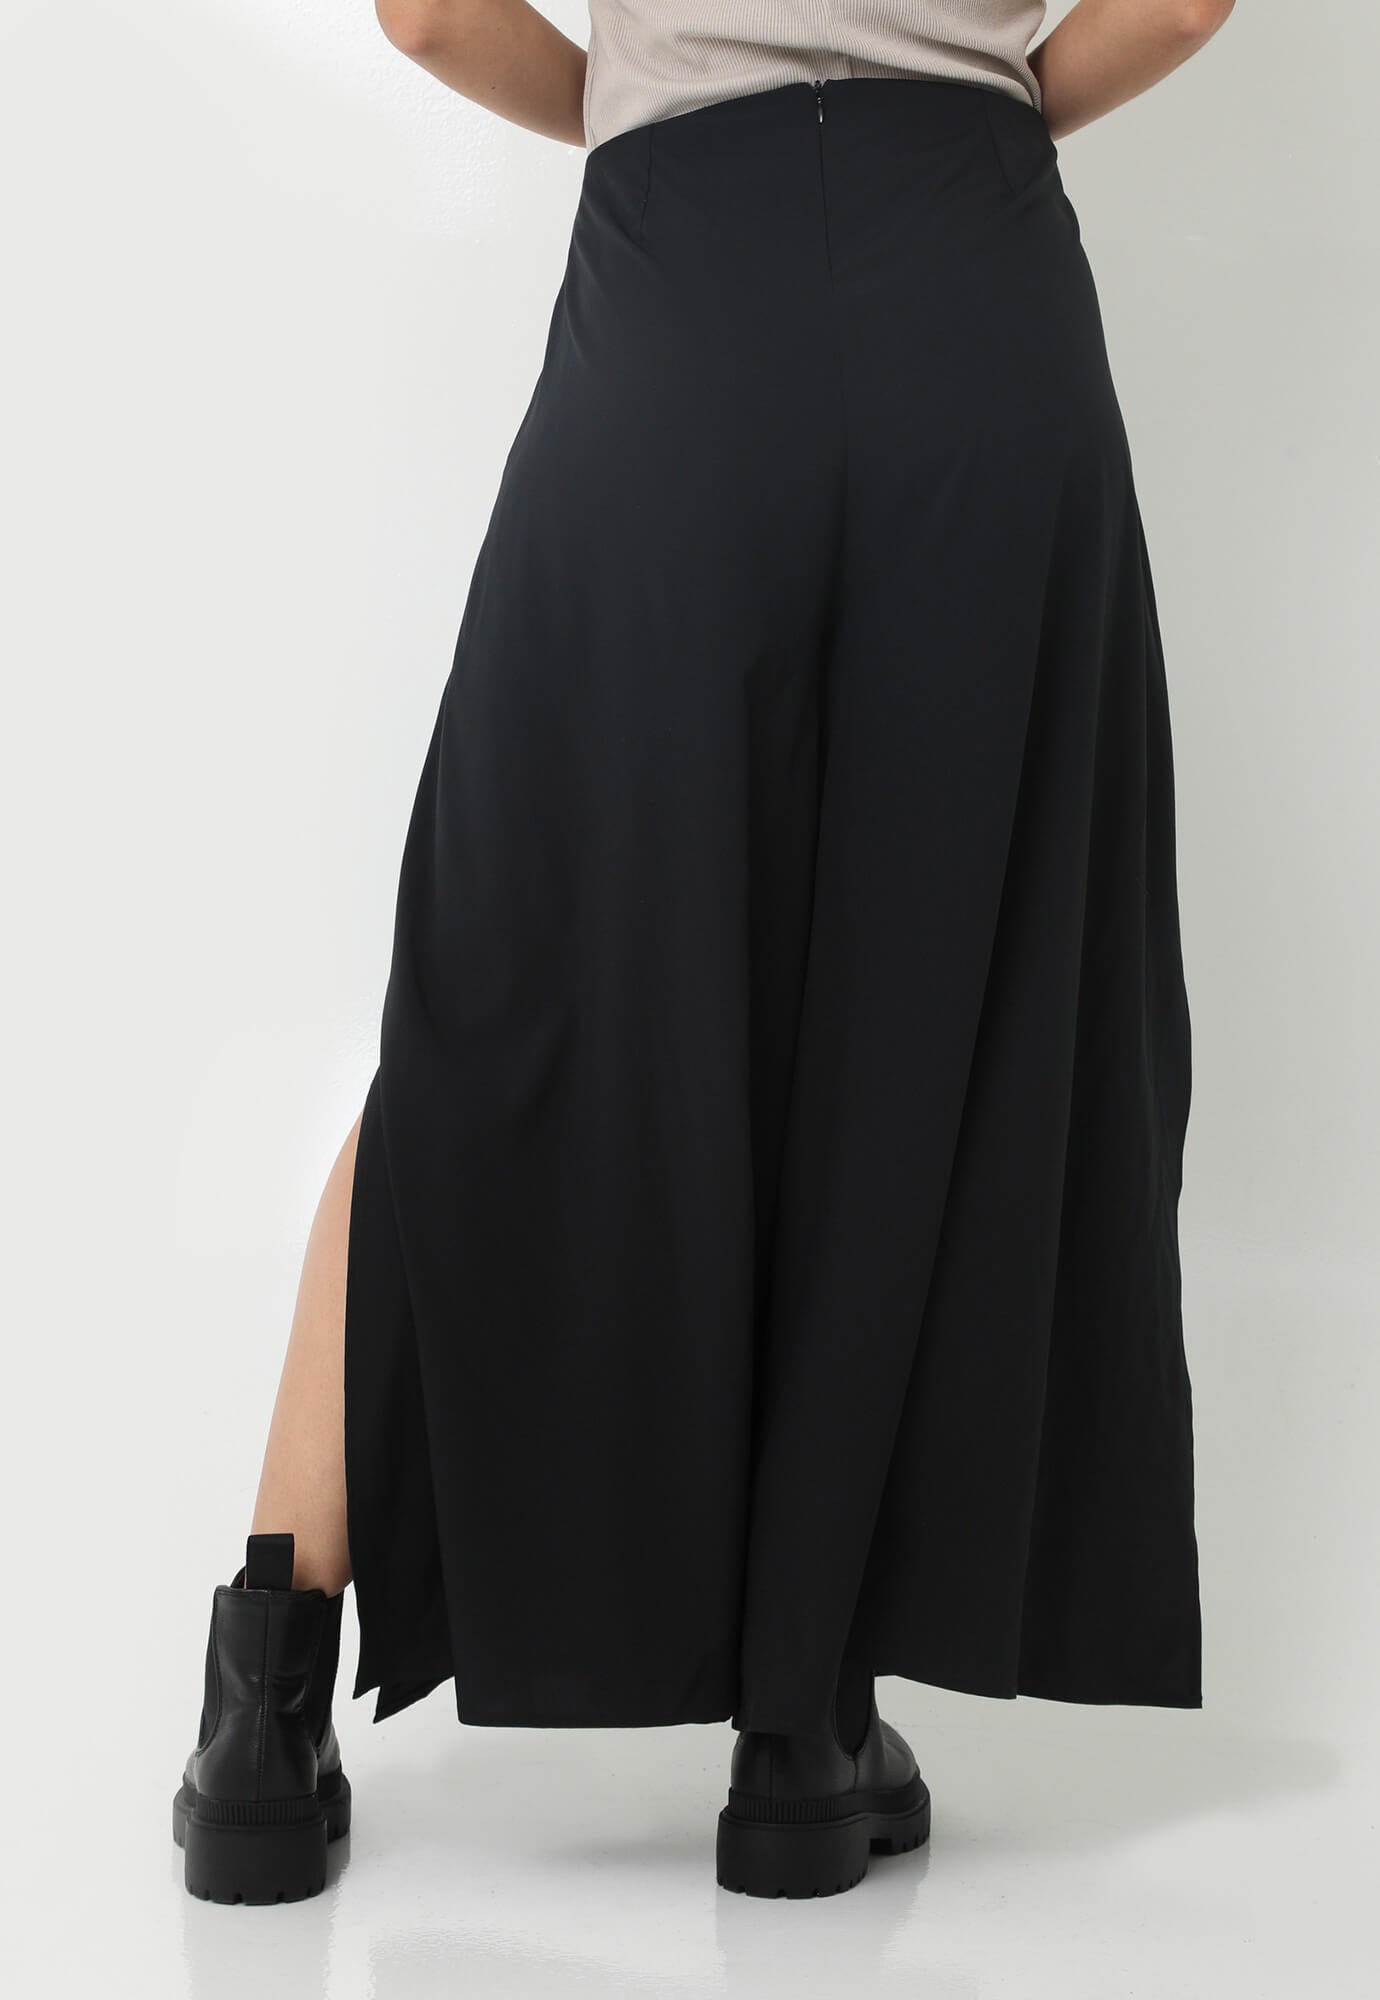 Pantalón negro con aberturas laterales en bota y cierre en trasero para mujer